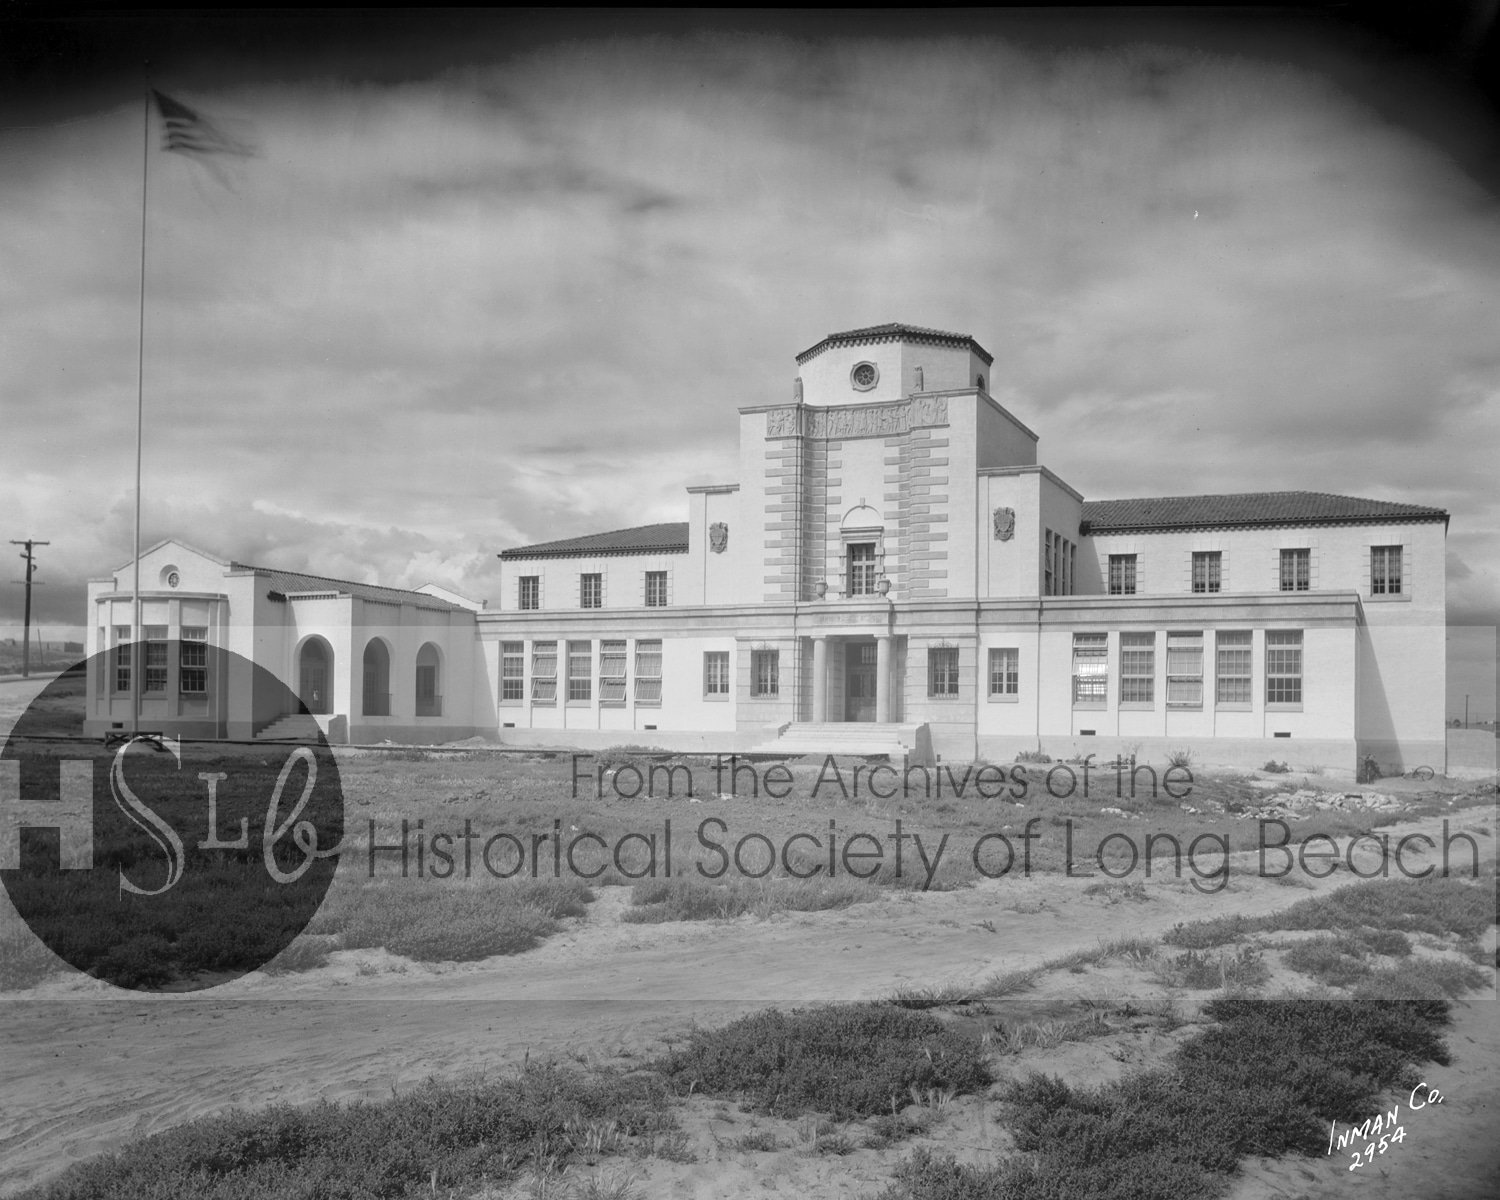 Powel School building, c. 1926